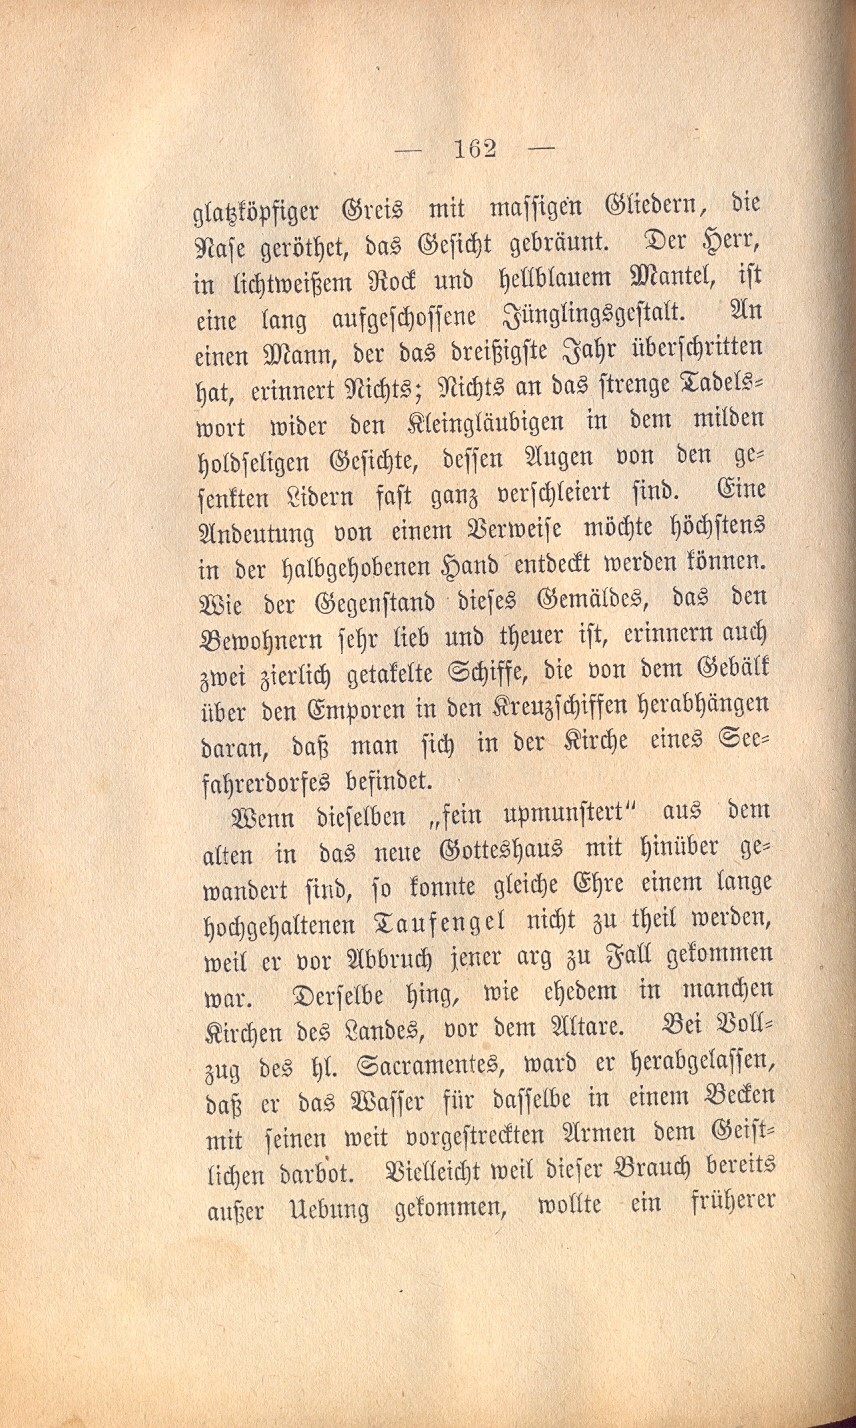 Fischland Dolberg S. 162